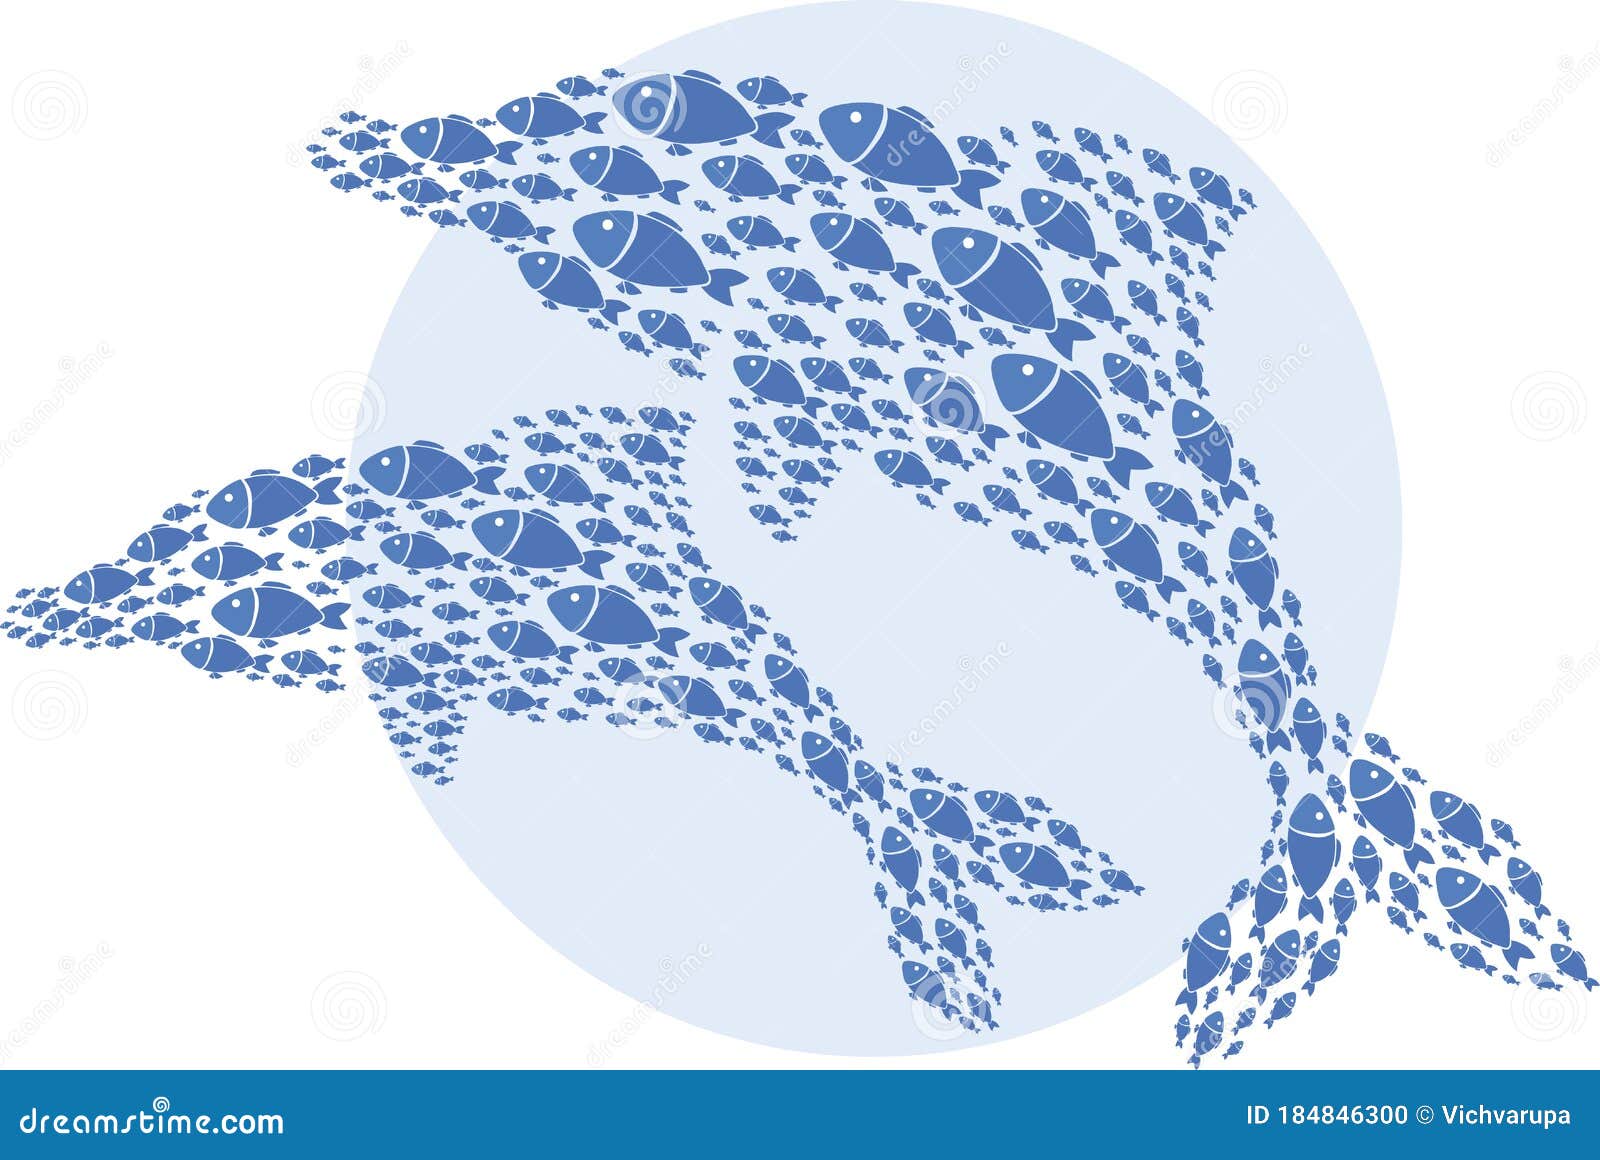 两只蓝海豚剪影由平鱼 徽标 矢量图组成向量例证 插画包括有设计 嬉戏 飞翅 要素 剪影